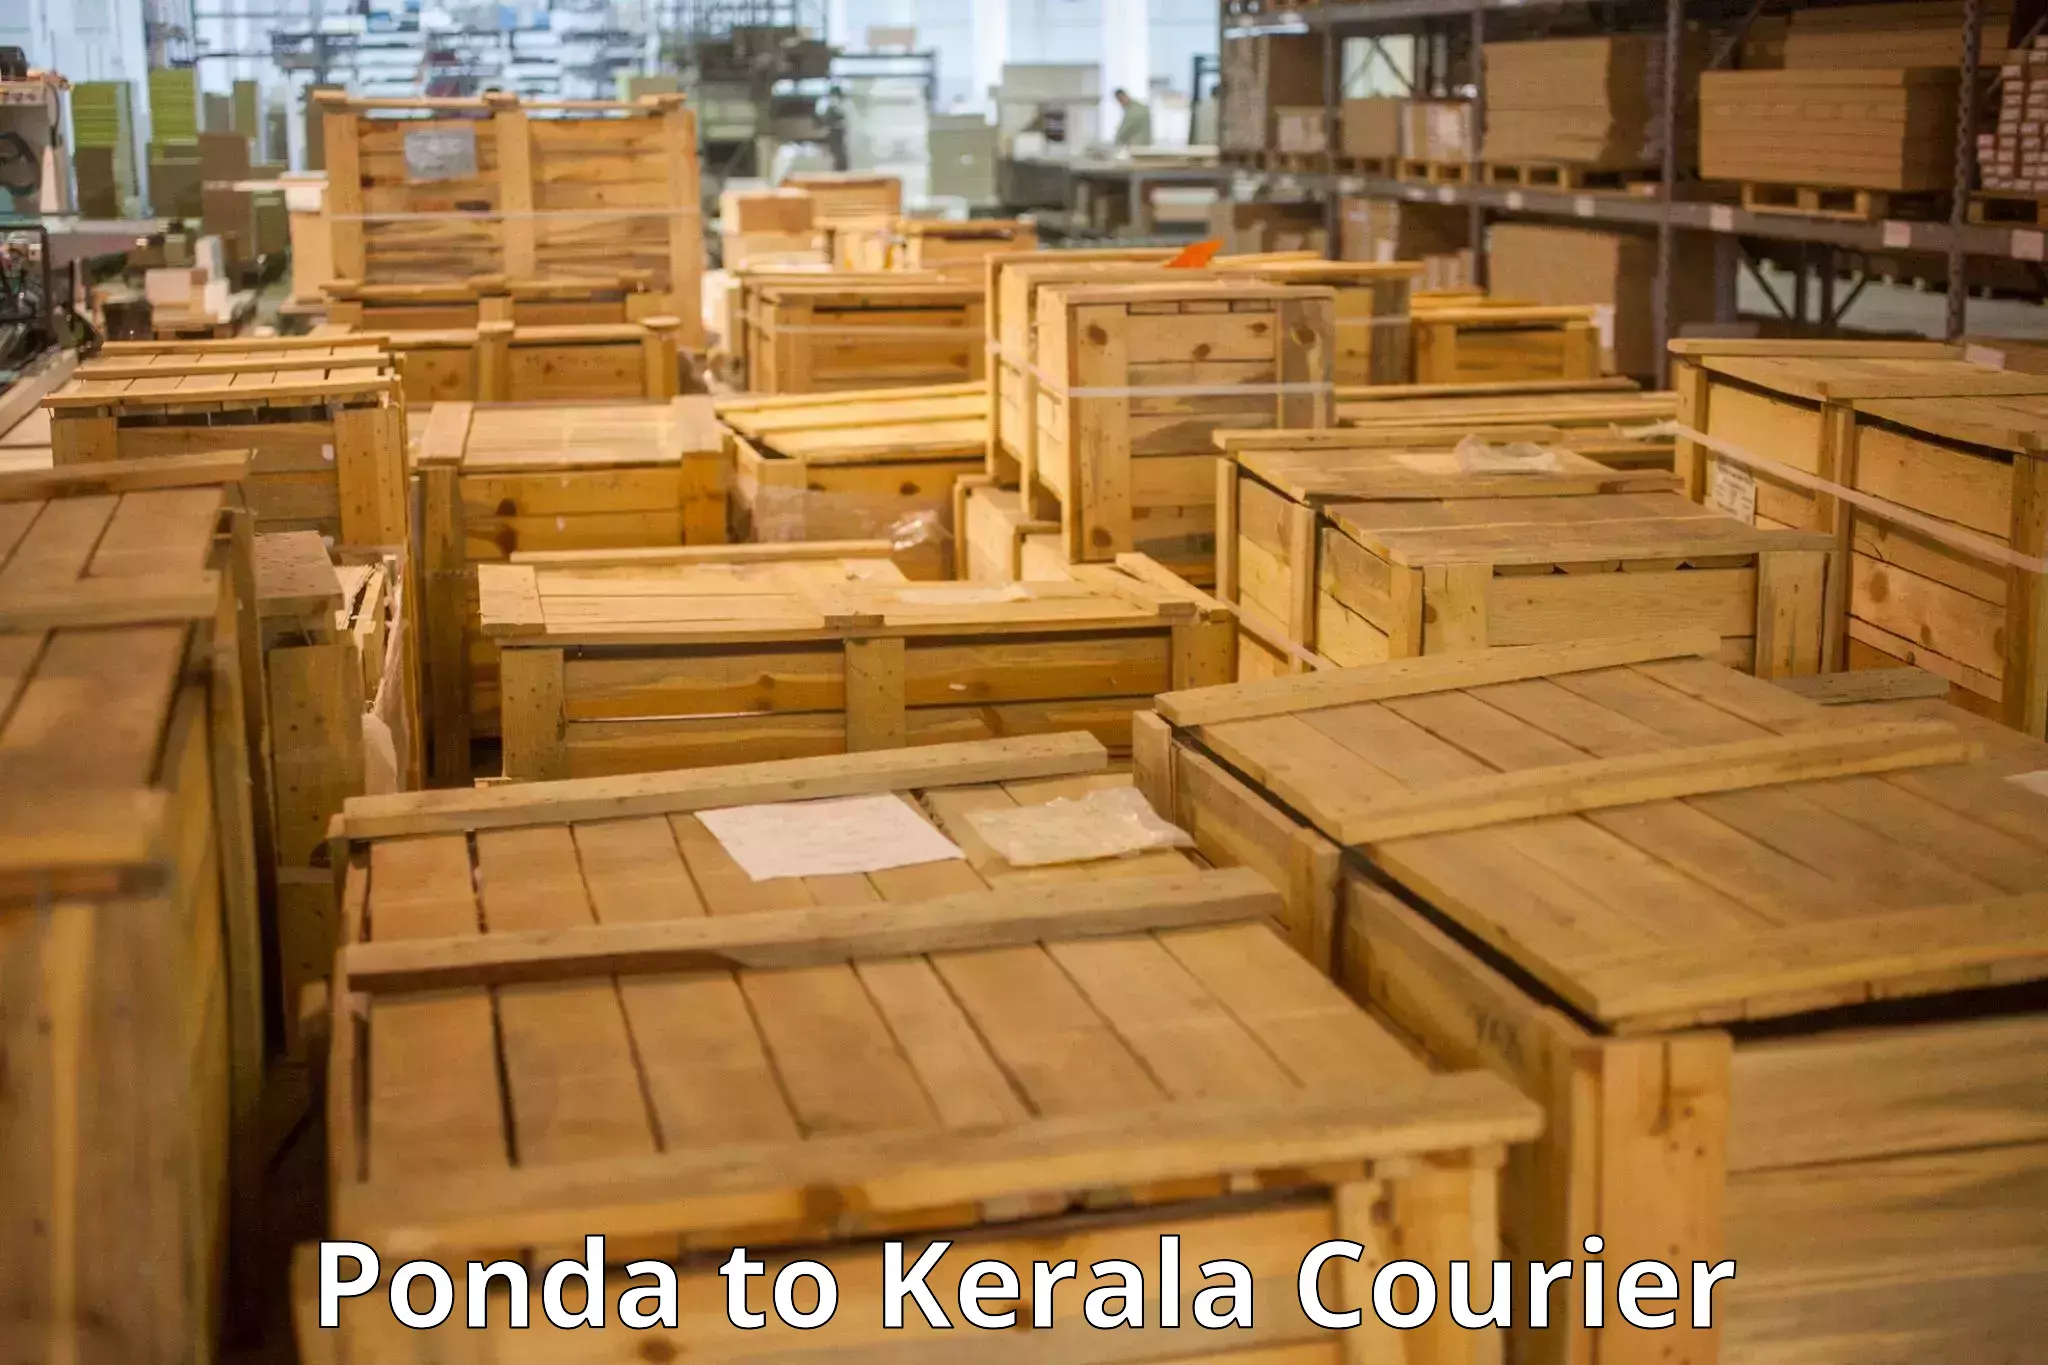 Baggage transport scheduler Ponda to Kerala